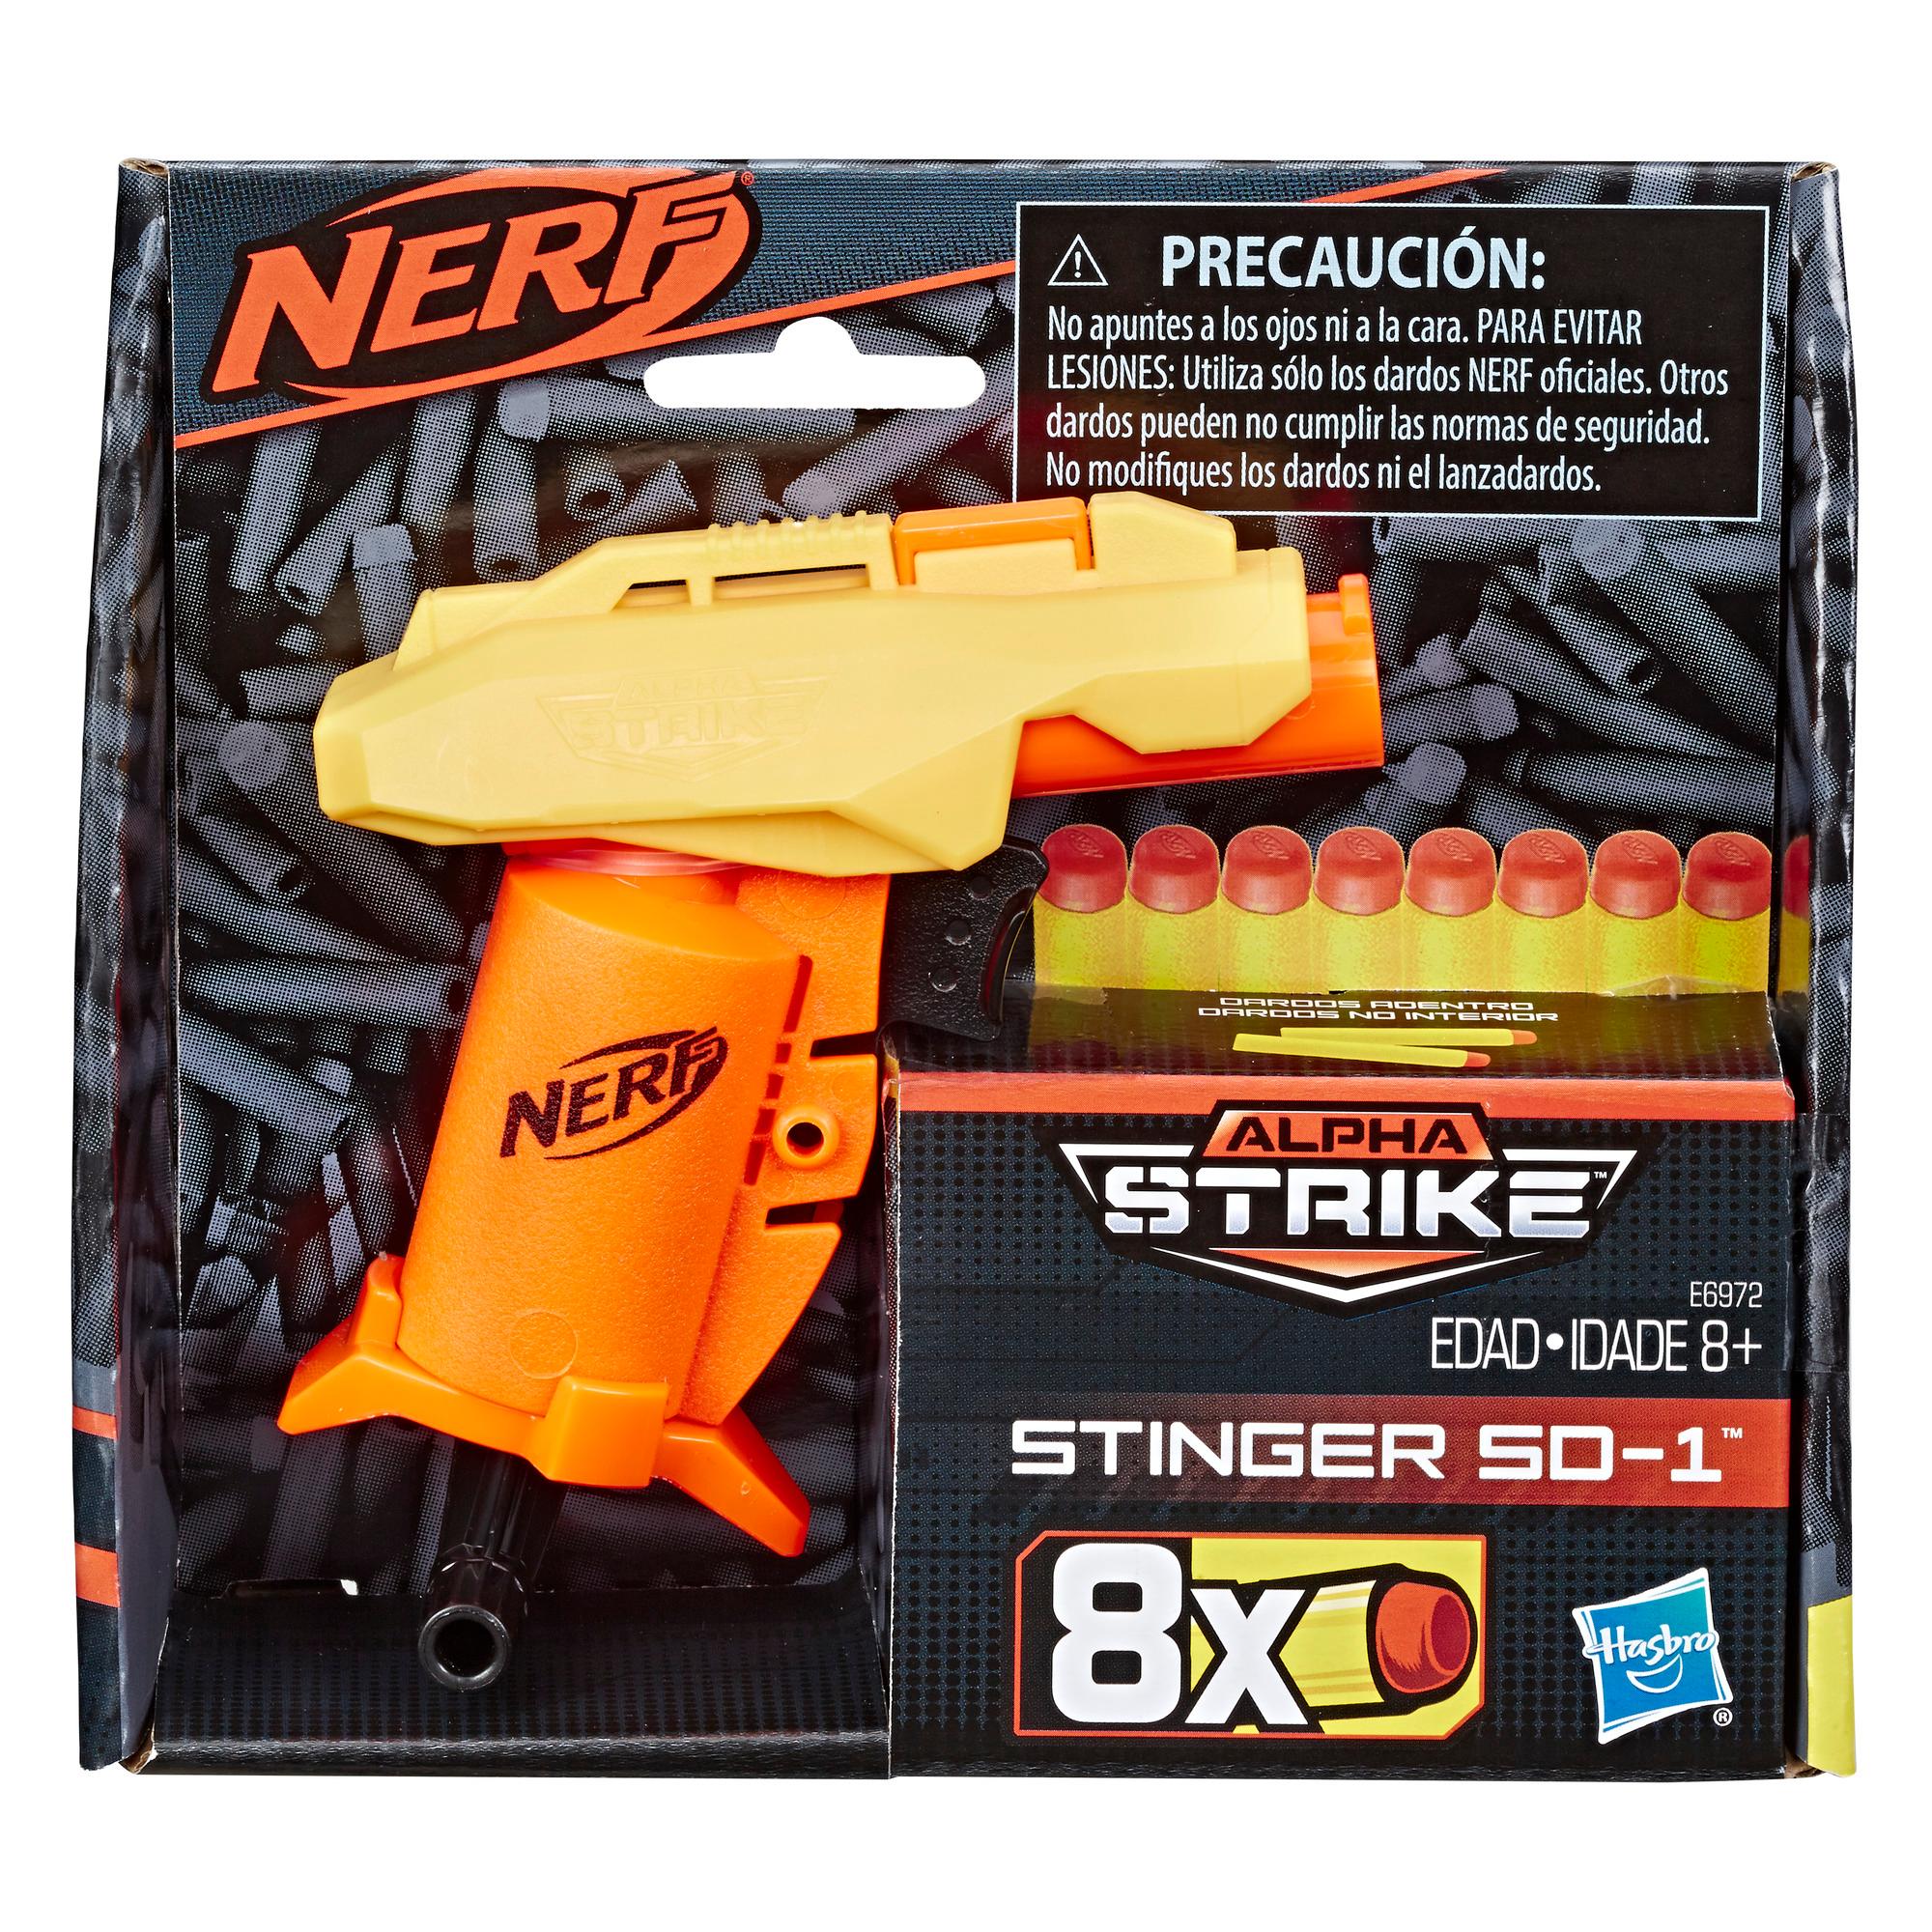 Stinger SD-1 Nerf Alpha Strike Toy Blaster